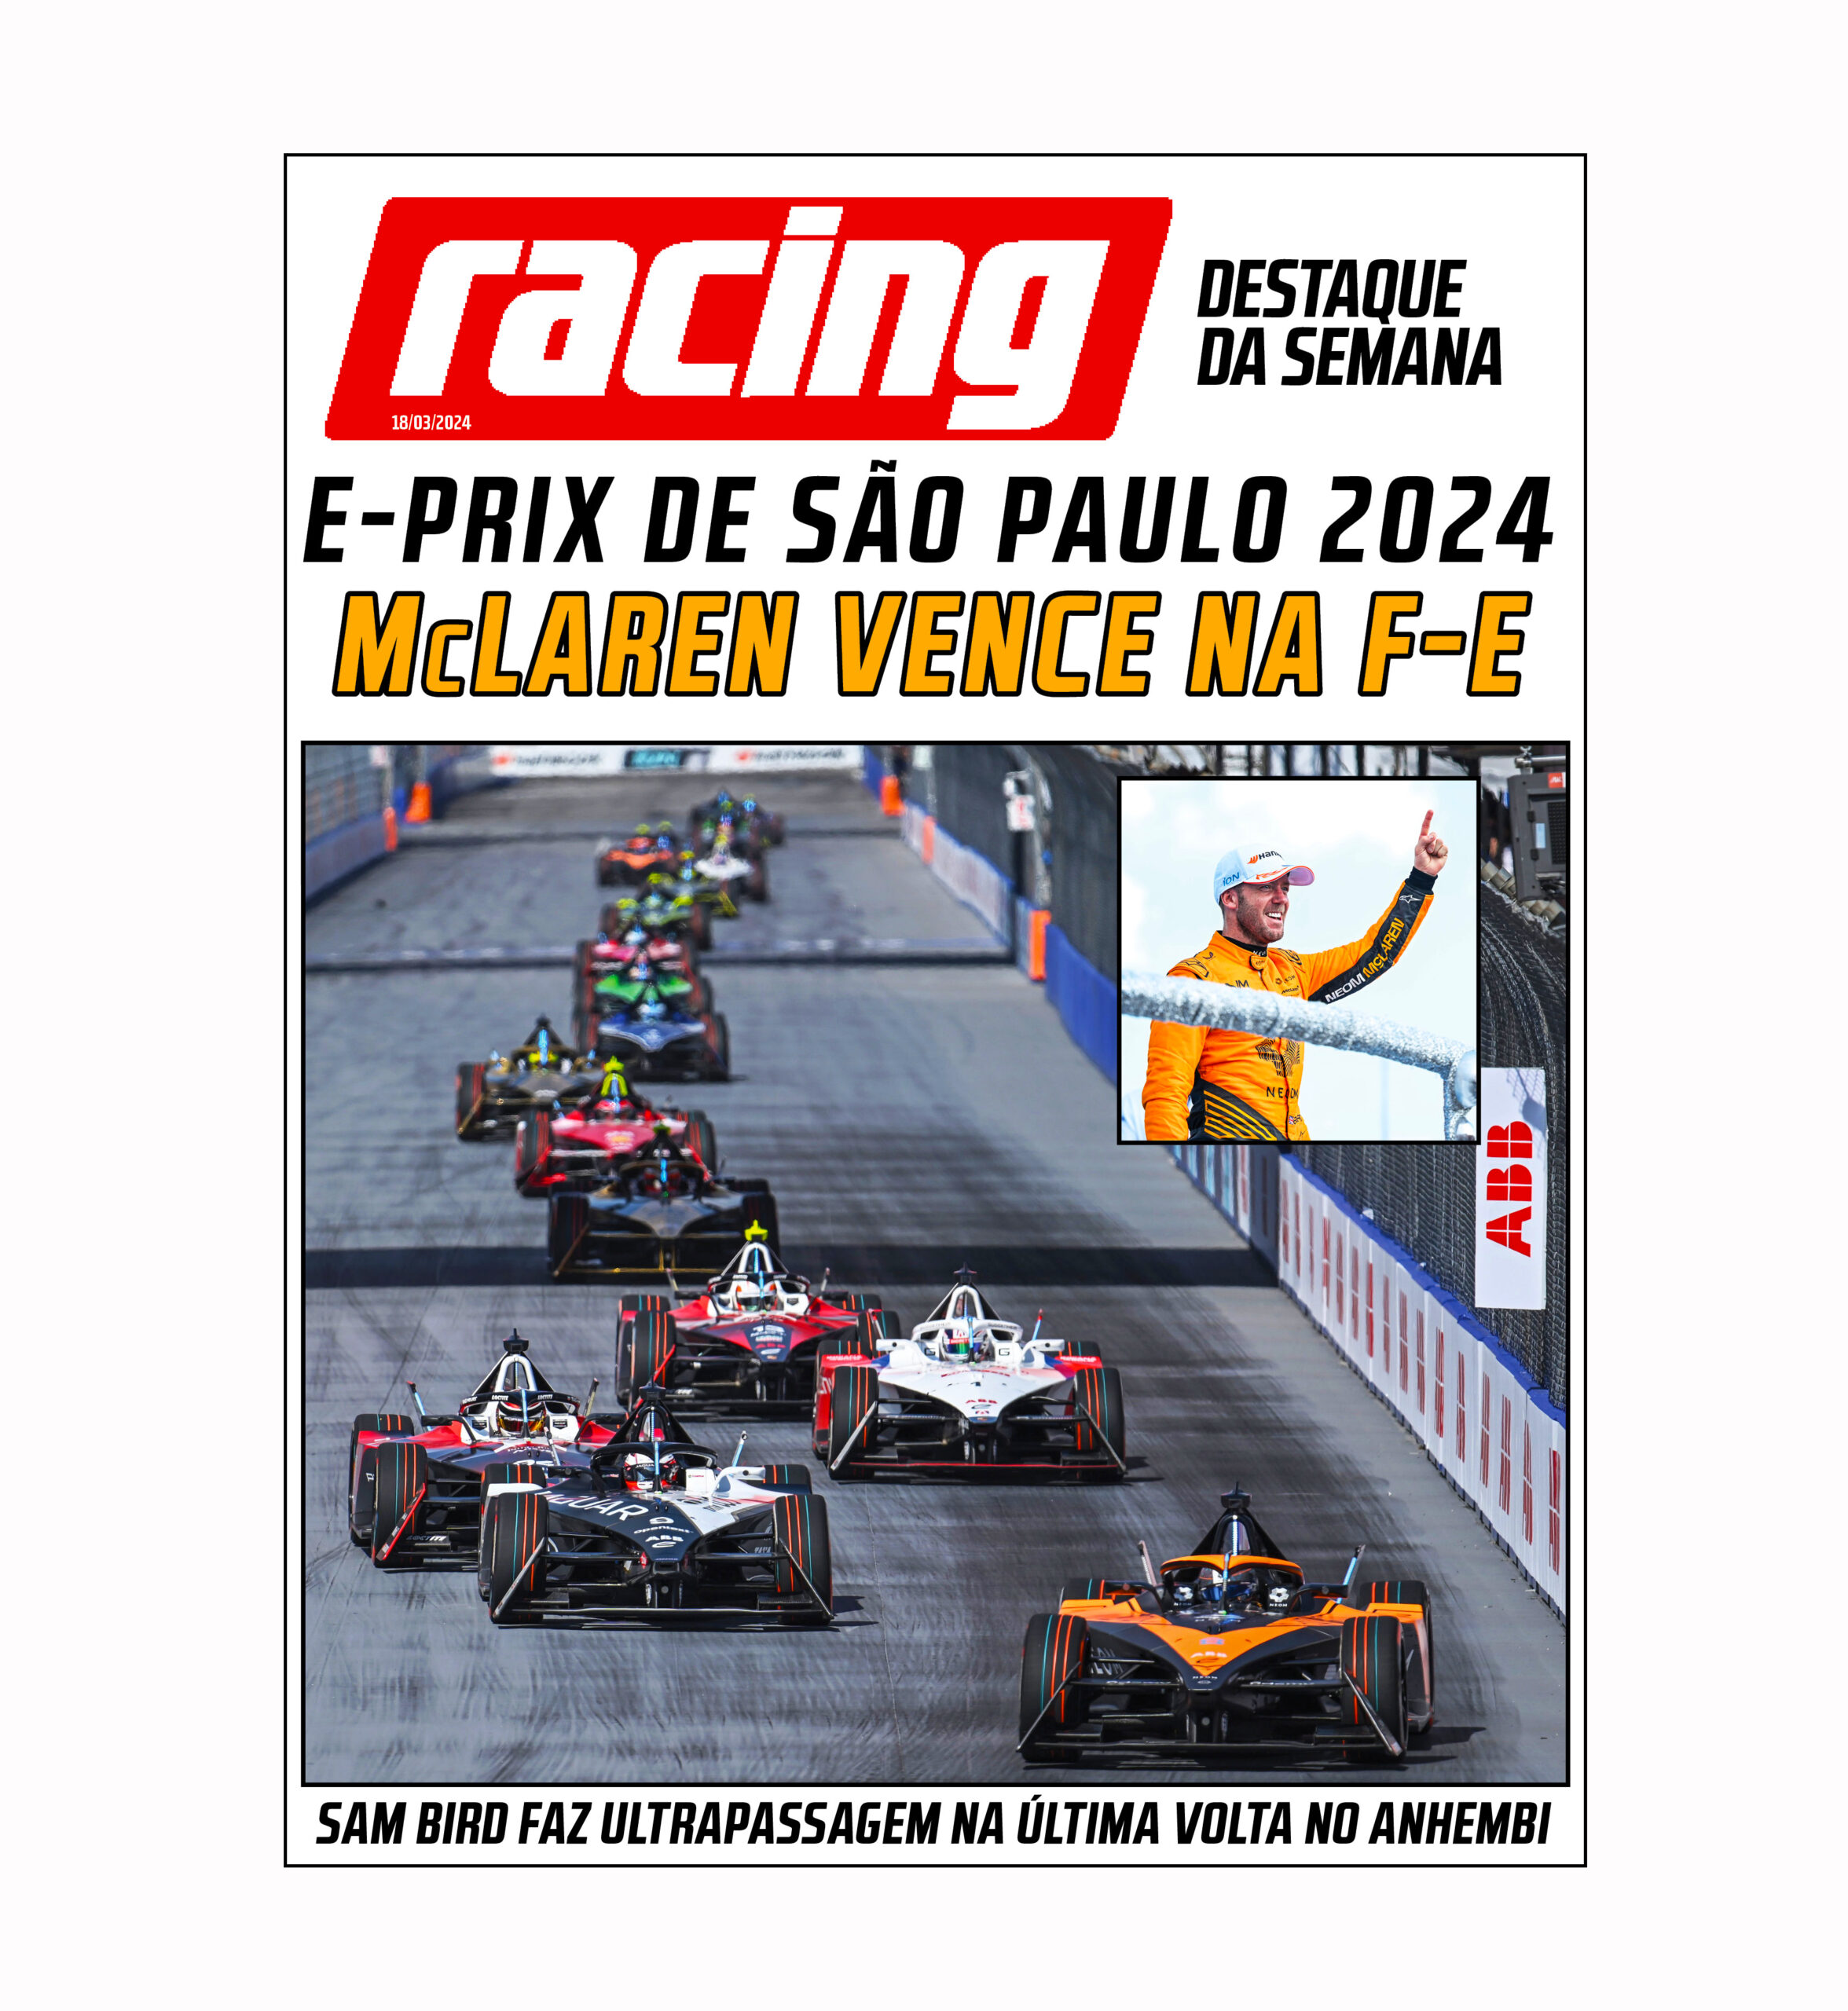 E-Prix de São Paulo de Fórmula E 2024